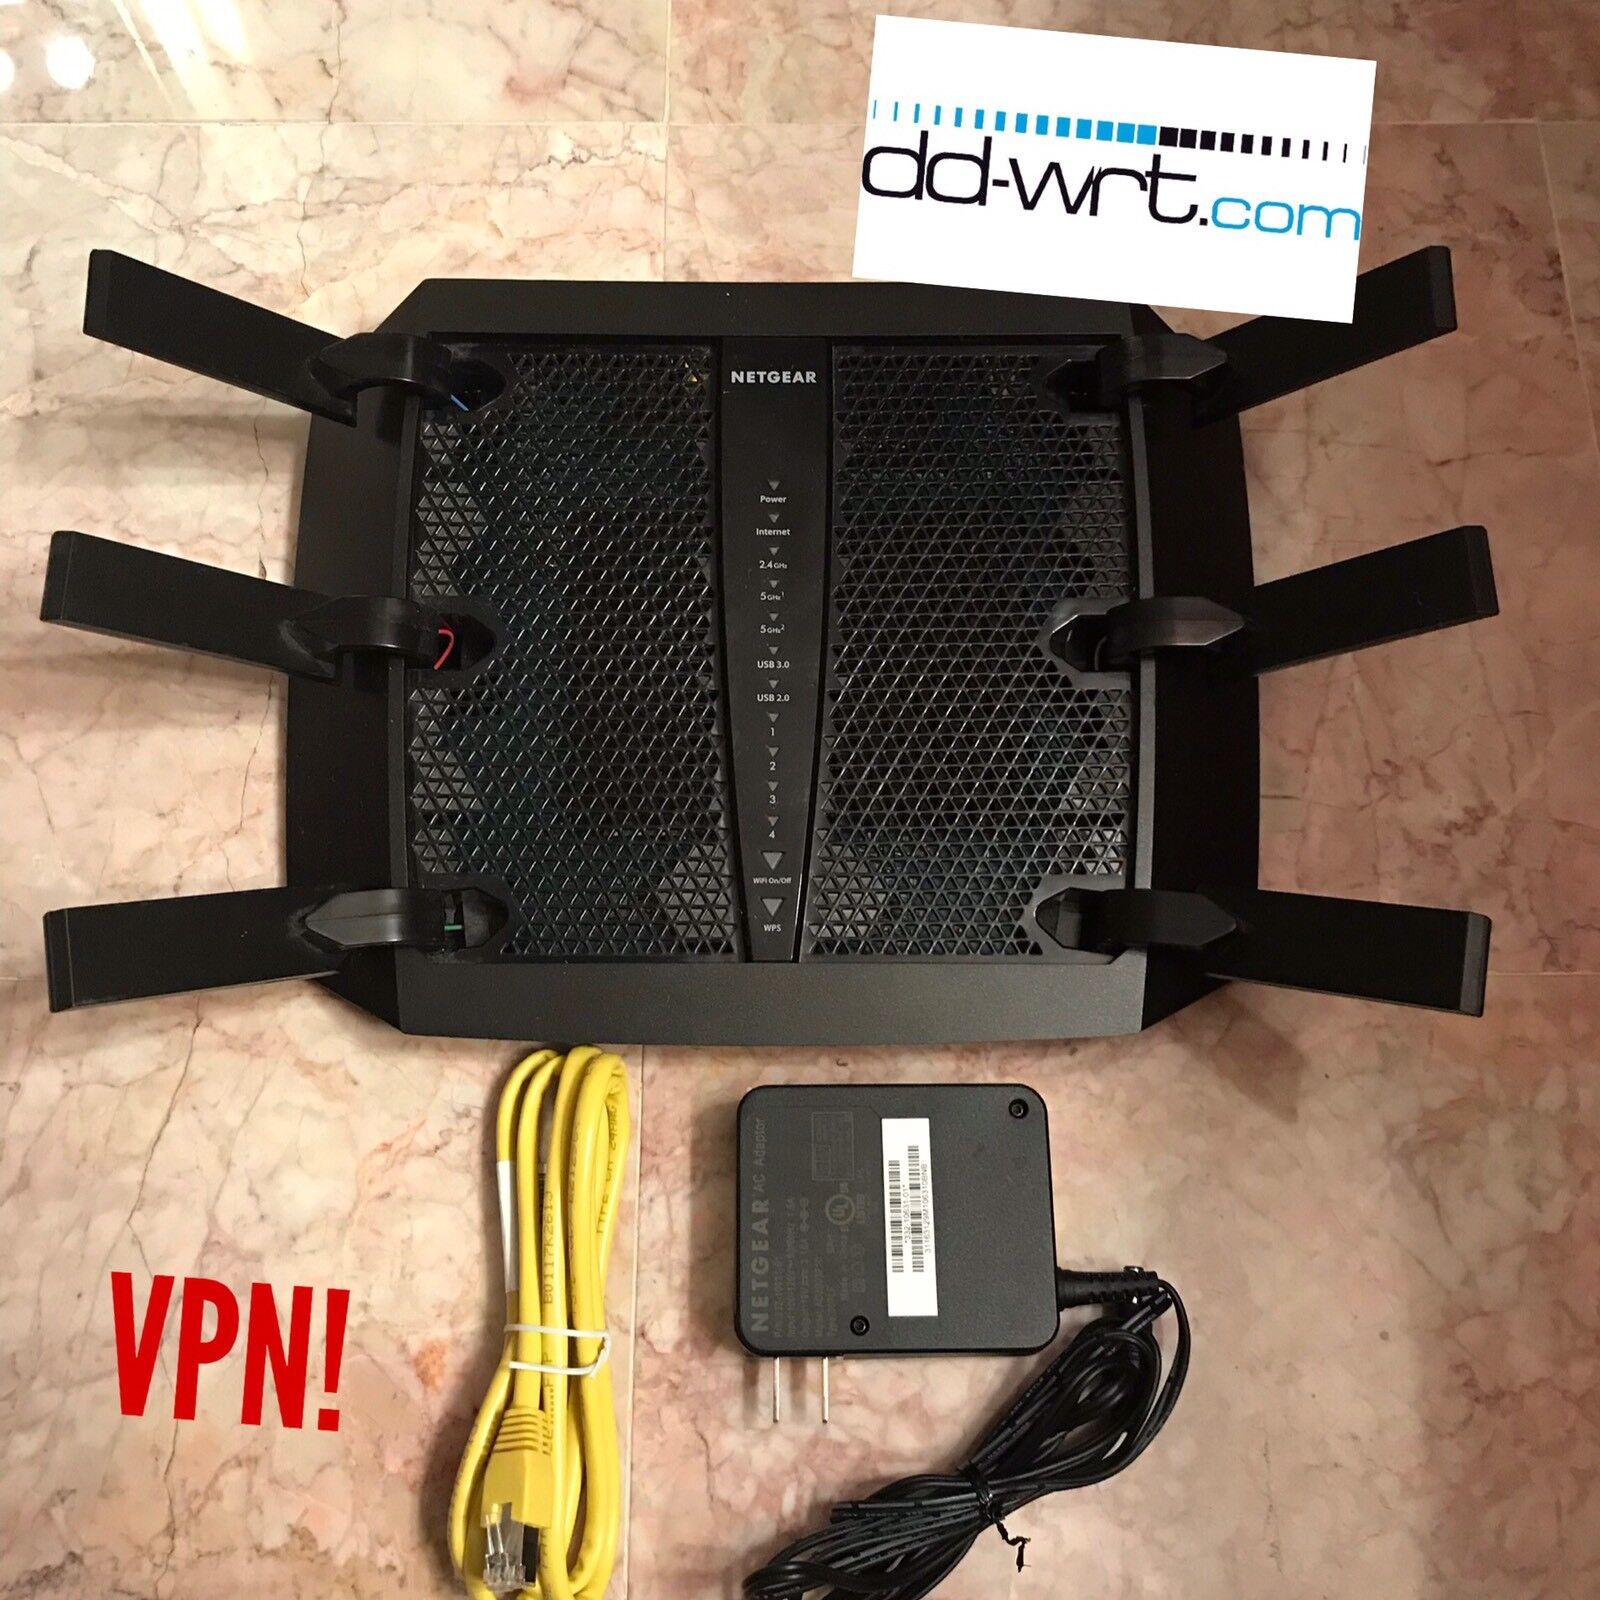 NETGEAR R8000 Nighthawk X6 AC3200 Tri-band Gigabit AC Router WITH DD-WRT VPN